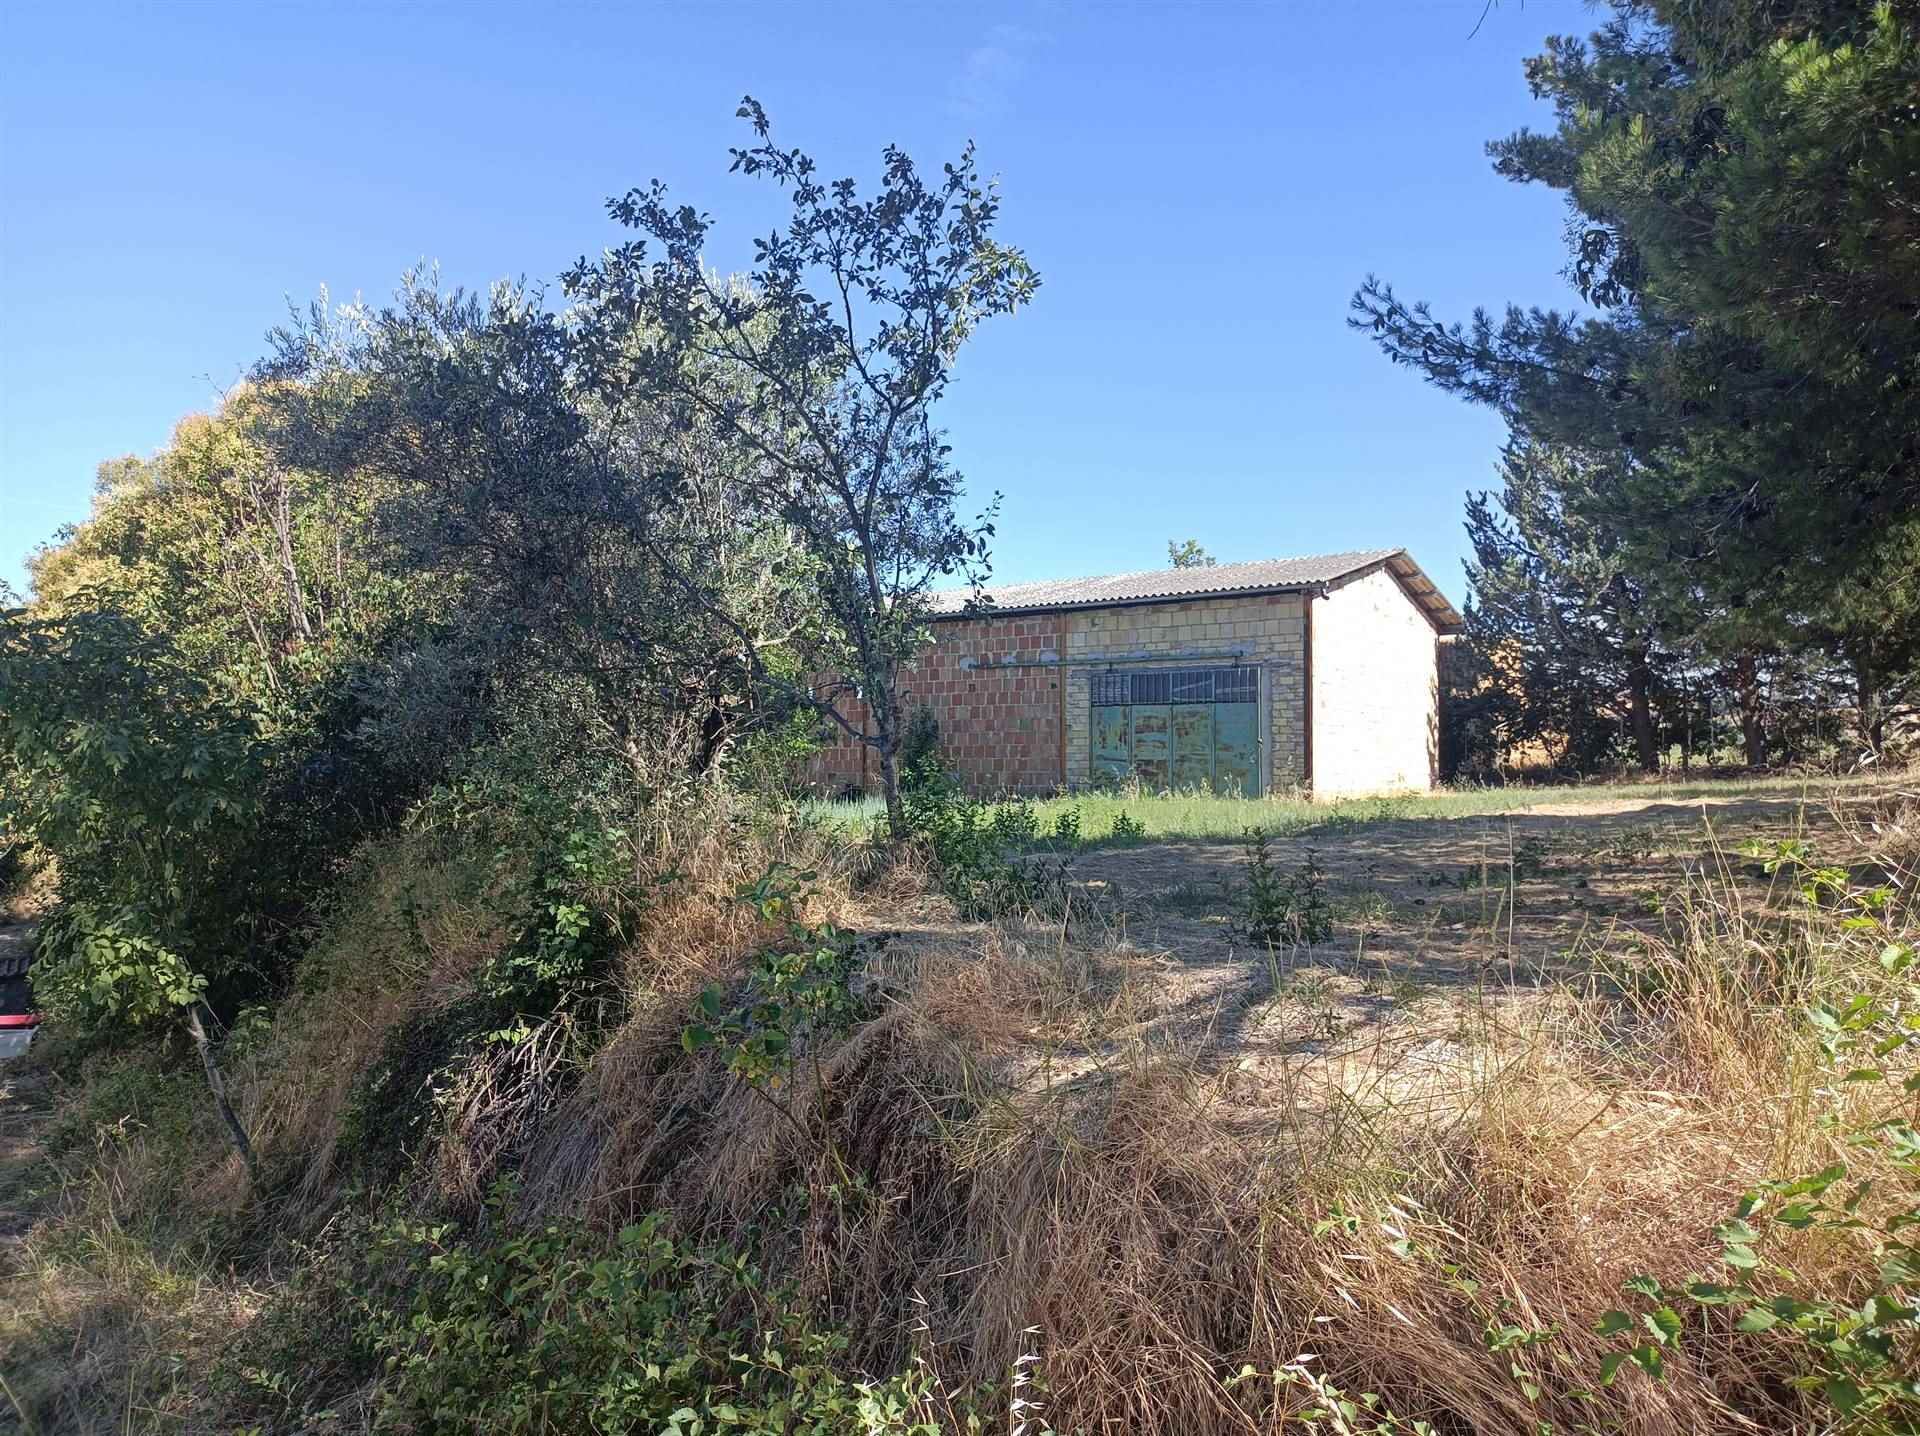 House for sale in San Severino Marche, MarcheF_649767 ima38451-F_649767.